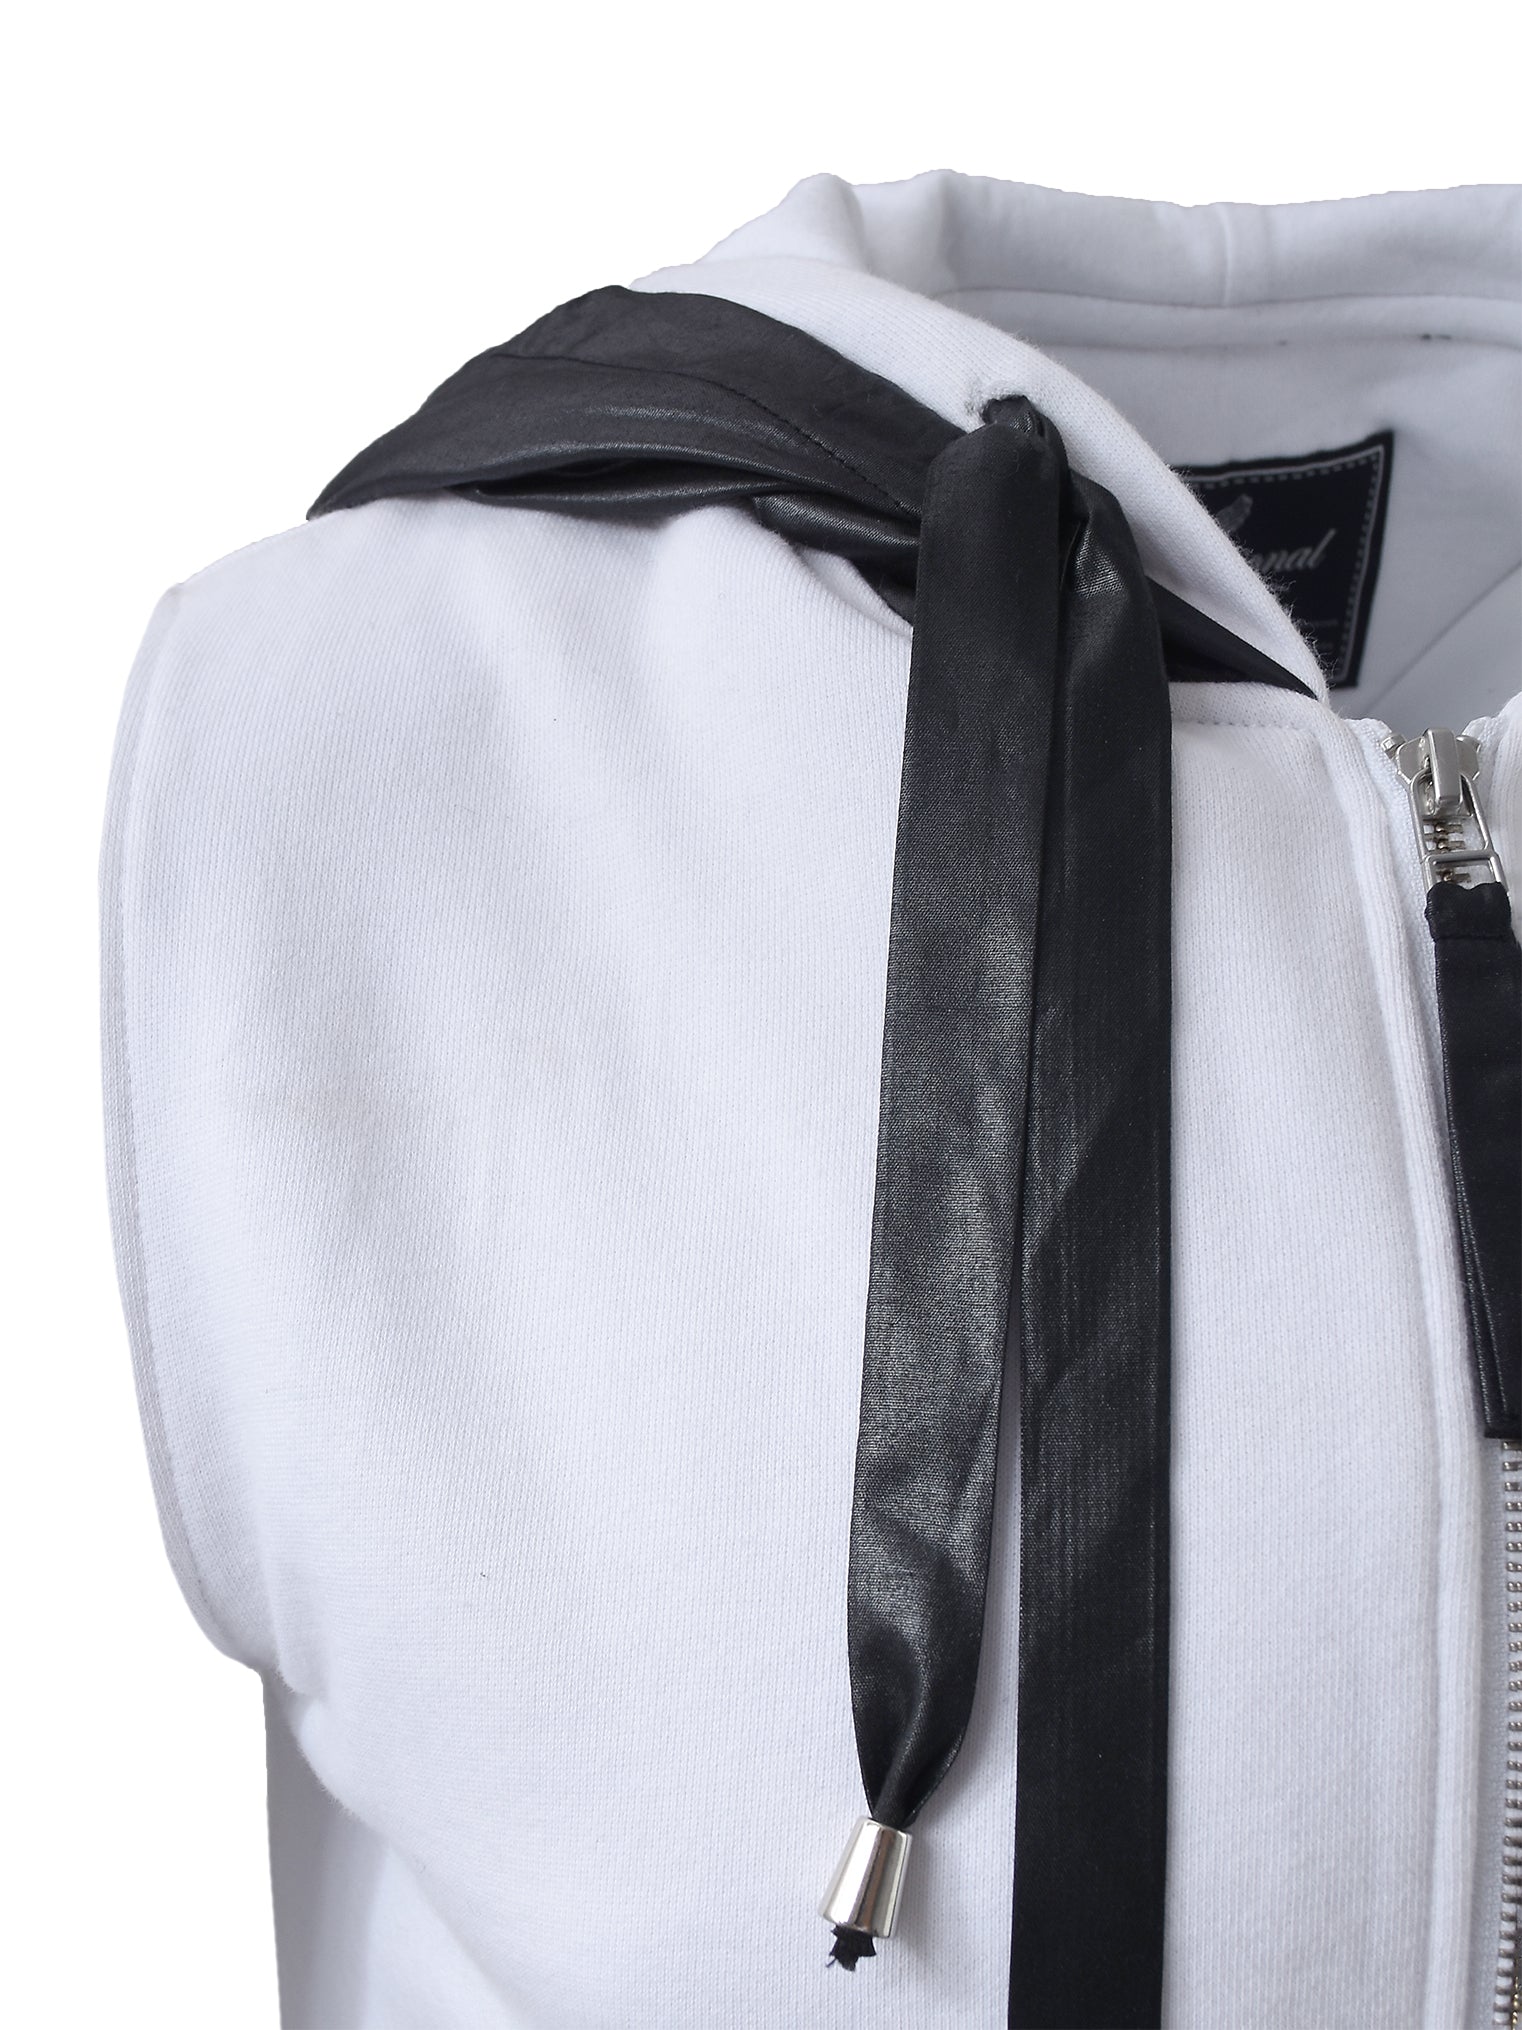 Black And White Sleeveless Hooded Vest